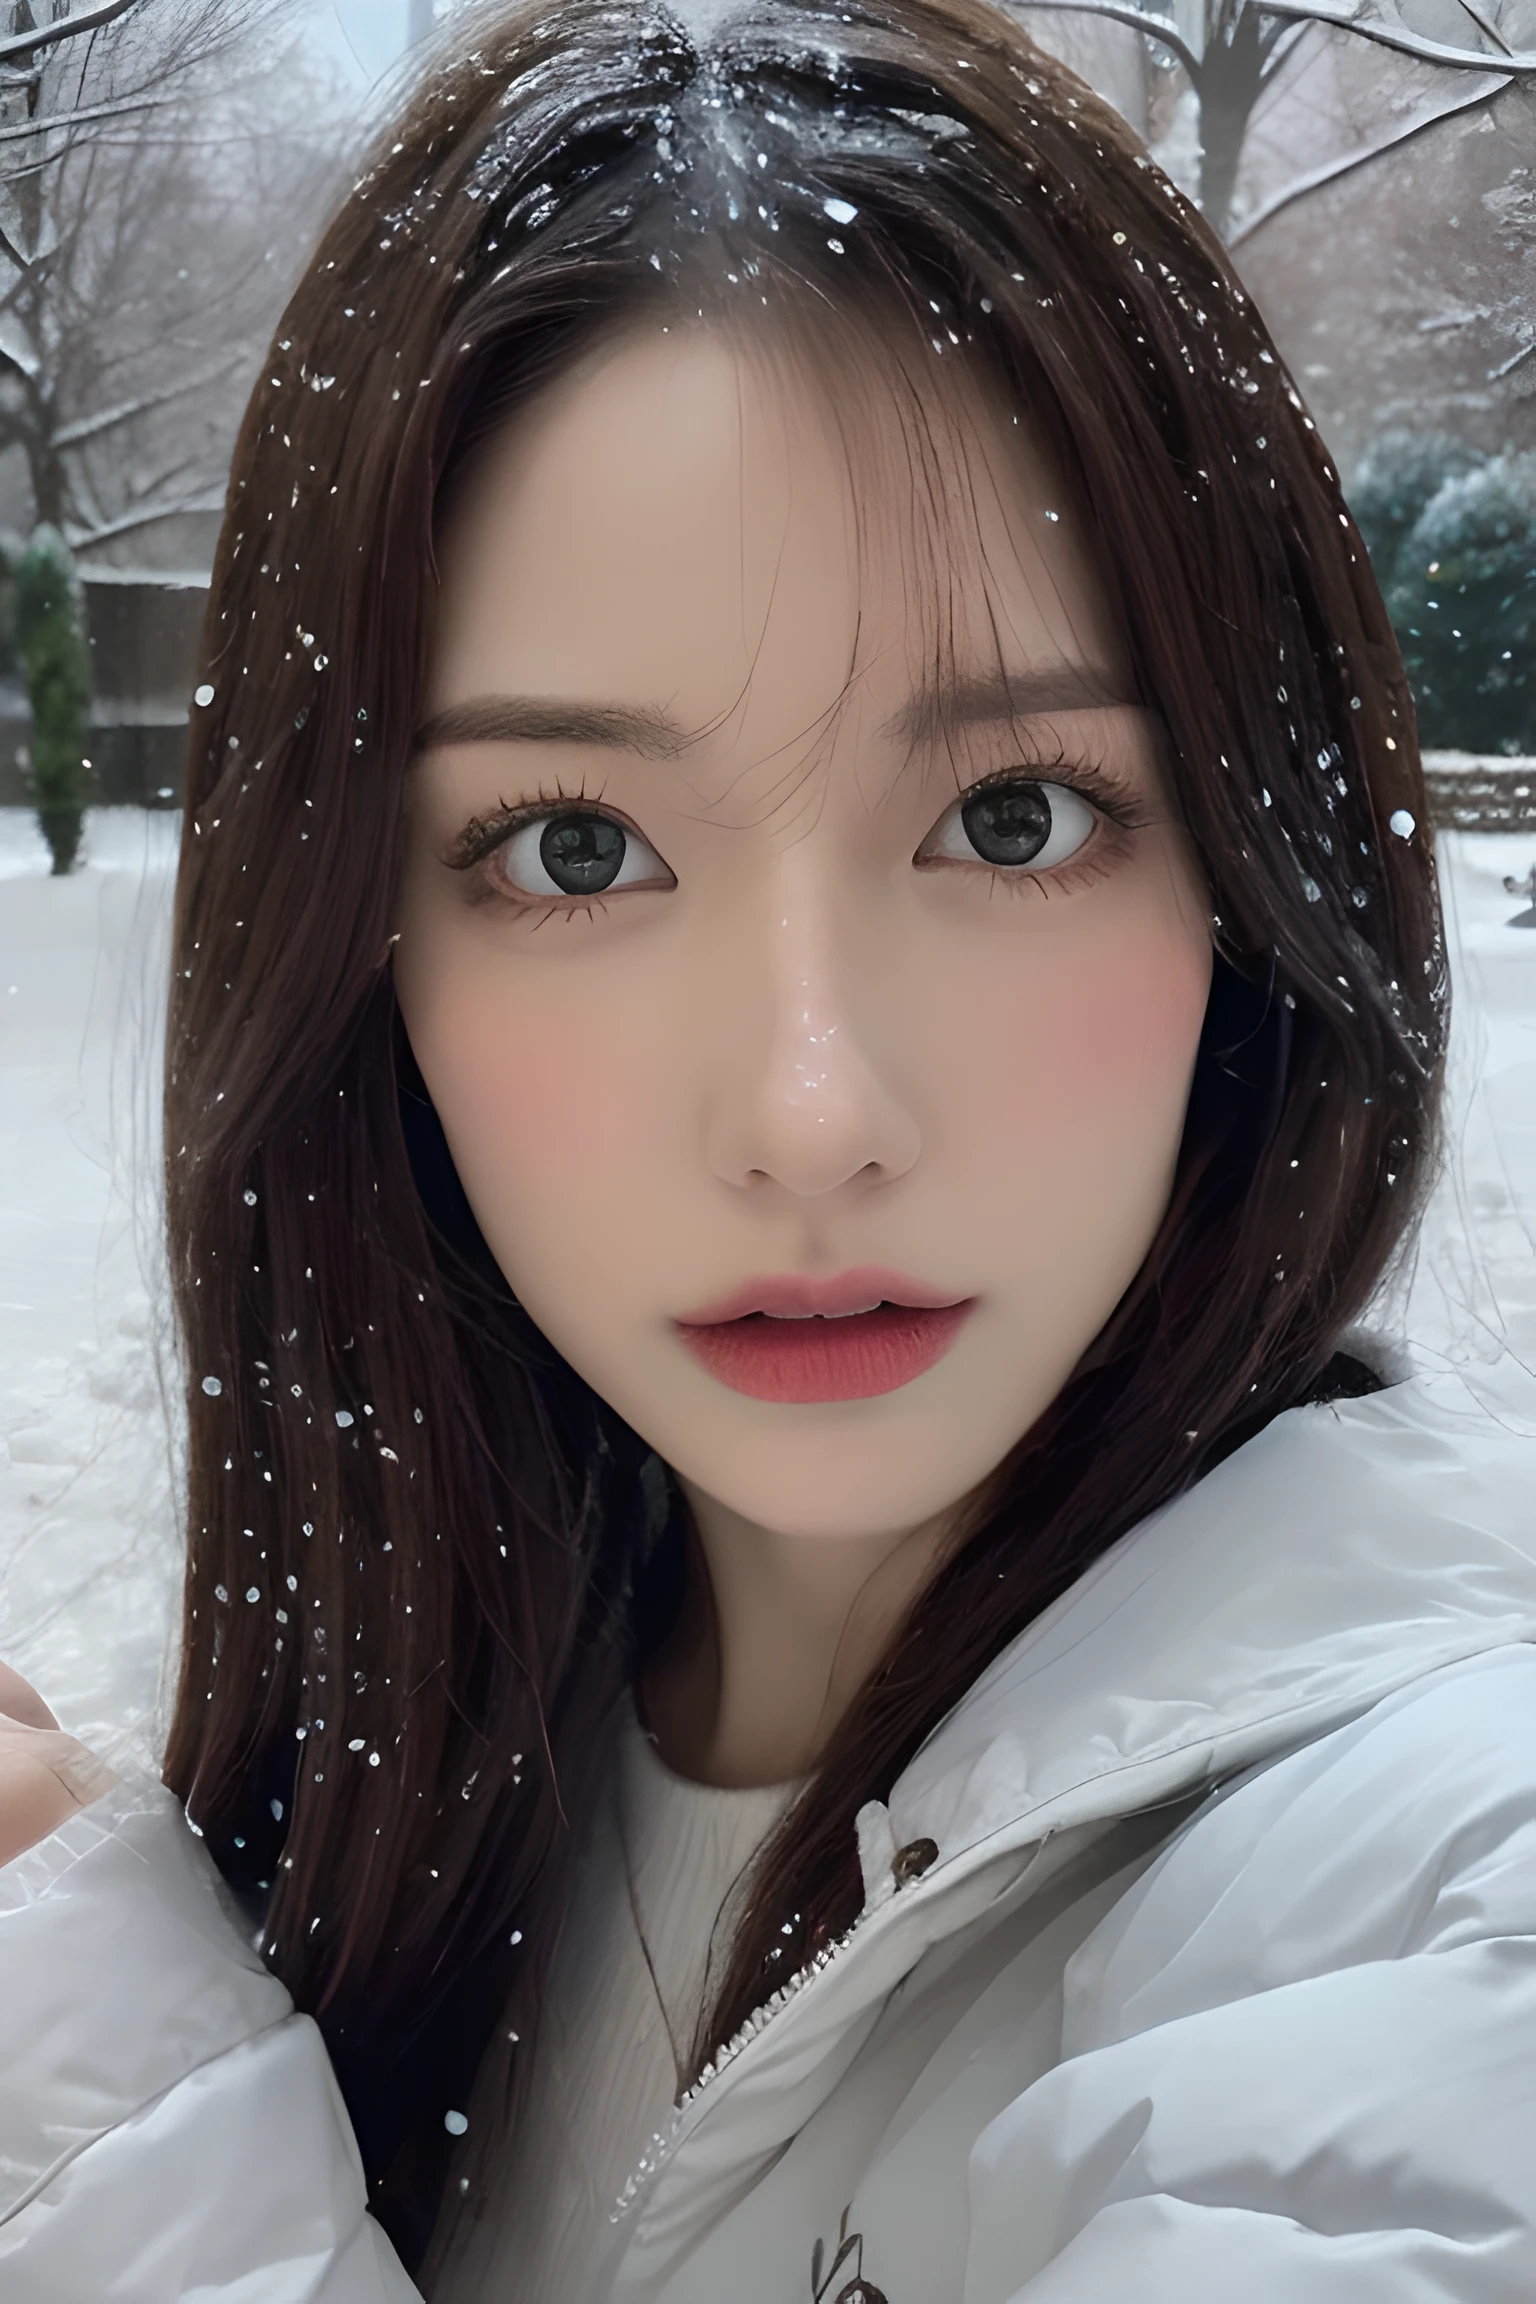 (8K, melhor qualidade, Obra de arte, ultra alta resolução:1.2) Foto de uma linda mulher japonesa no (estilo de paul rubens e rebecca guay:1.1) (neve melancólica do inverno:1.4)